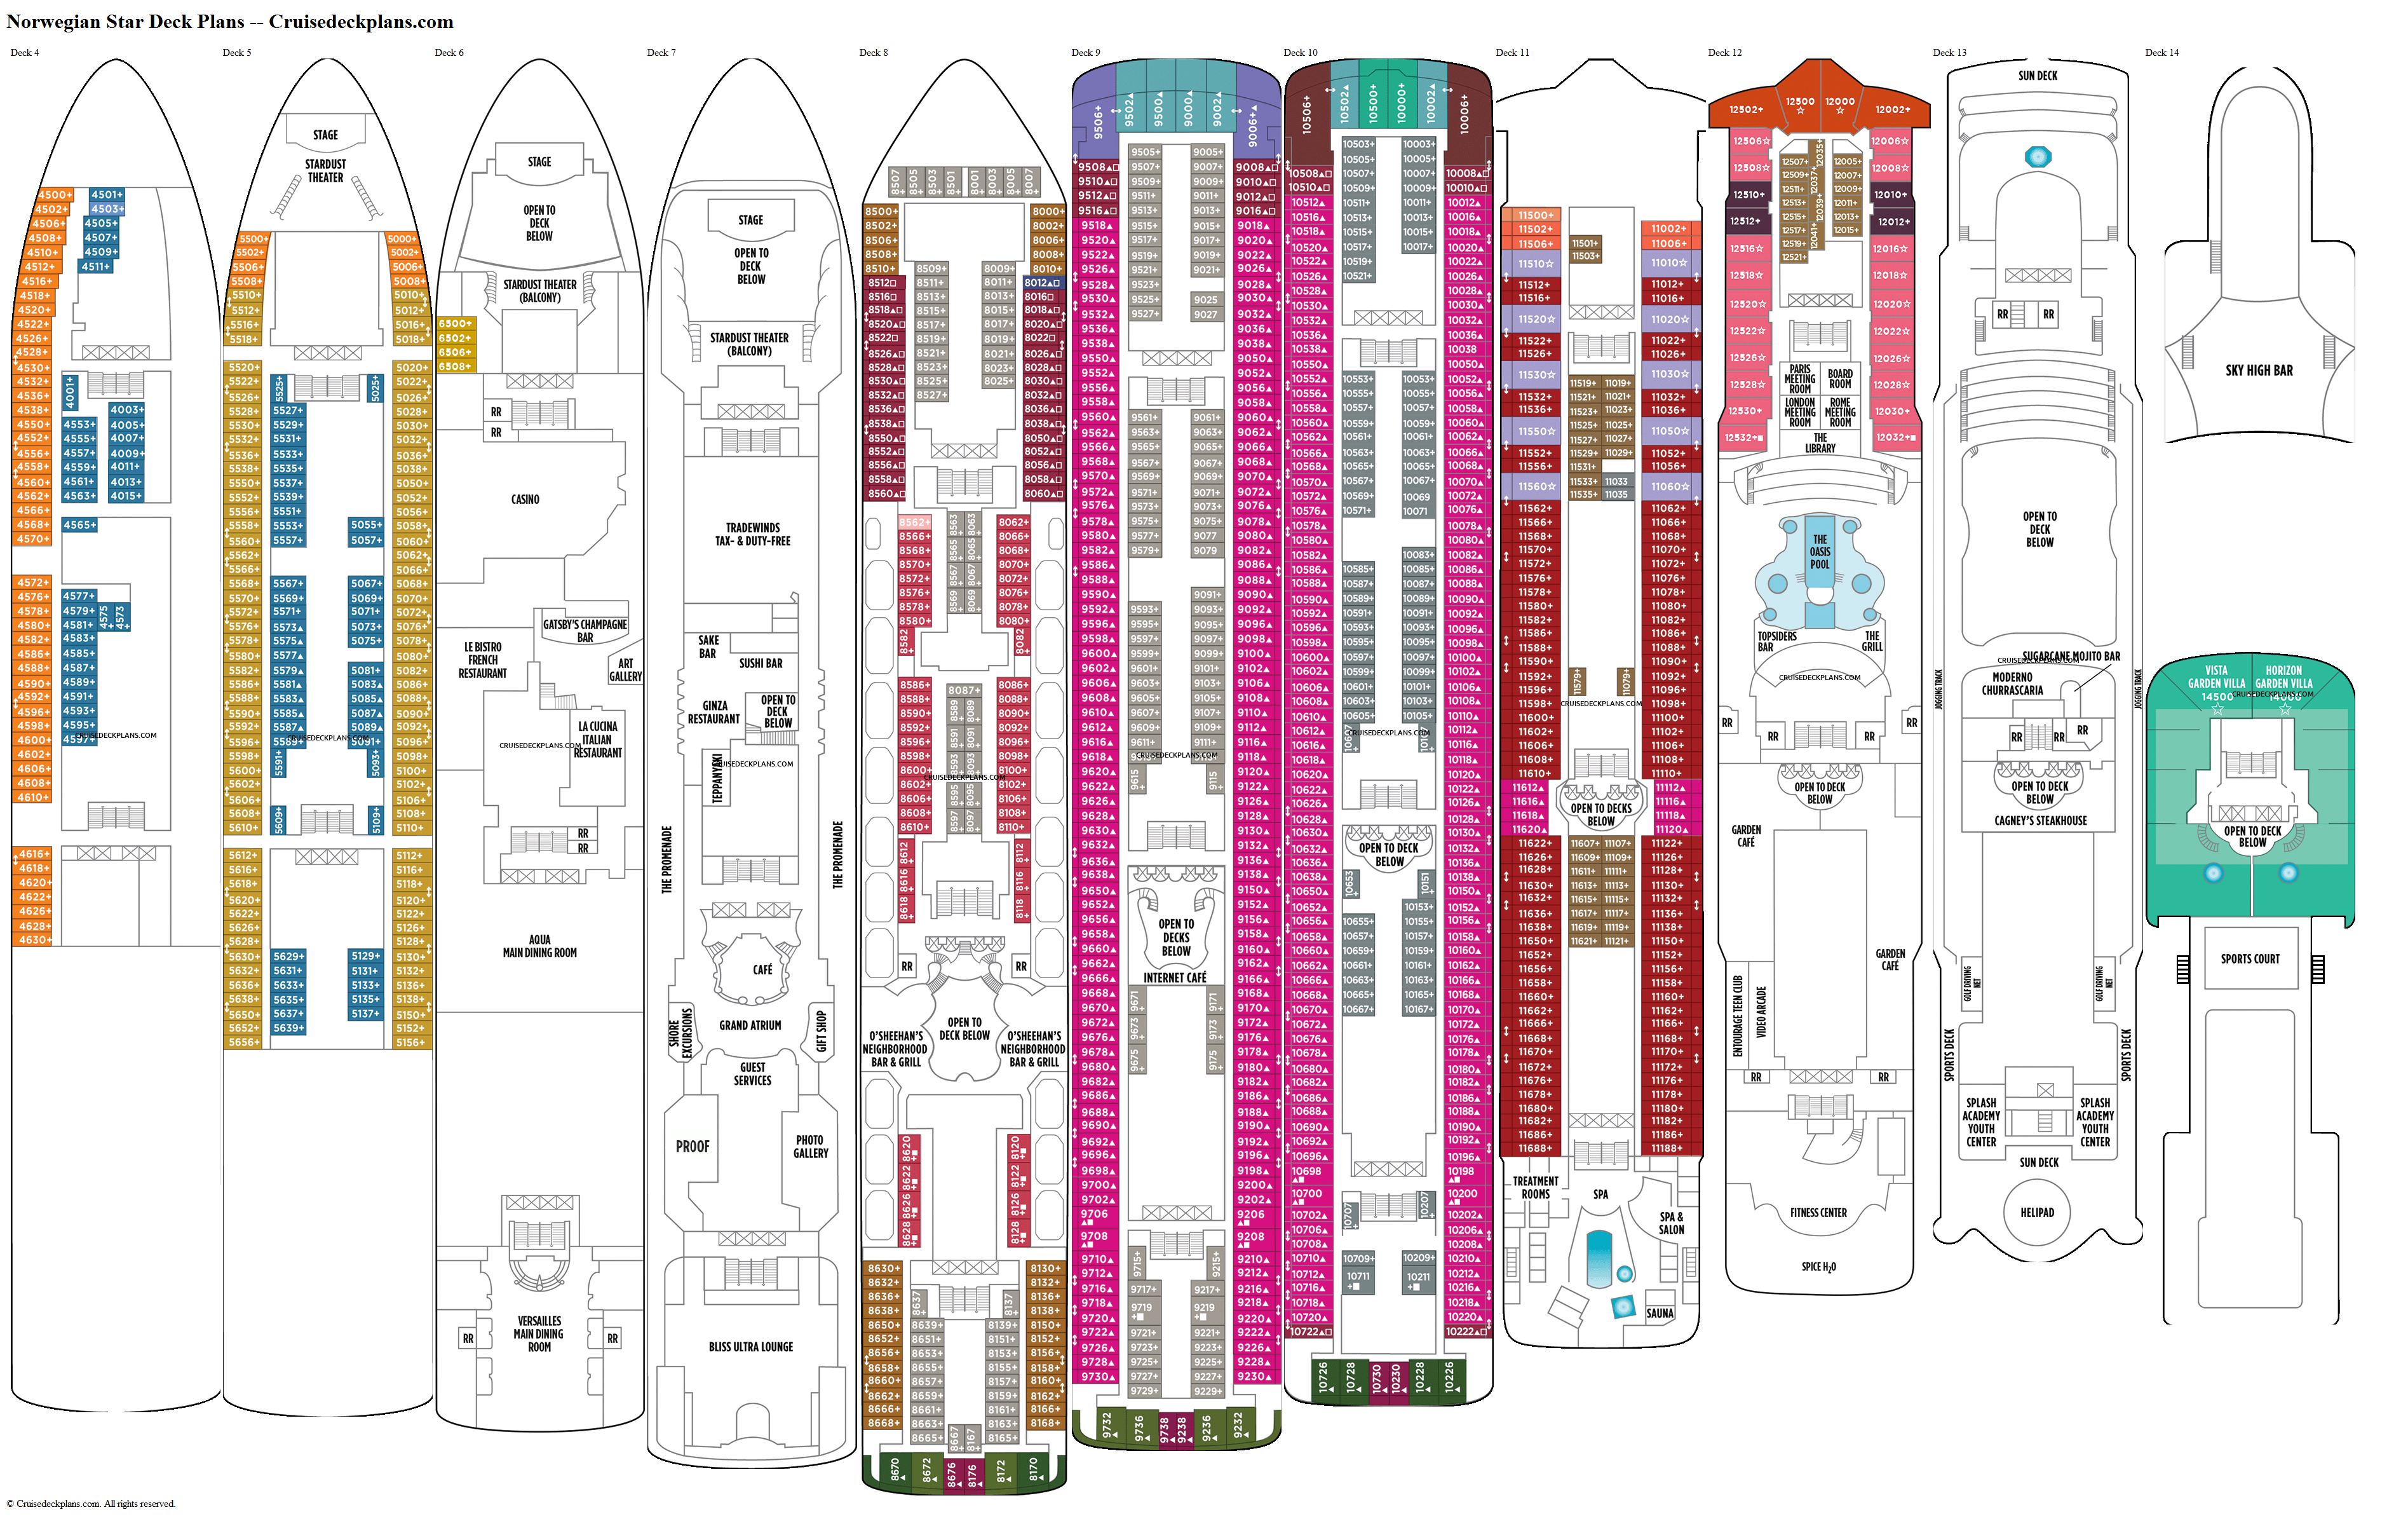 Norwegian Star Deck 11 Deck Plan Tour